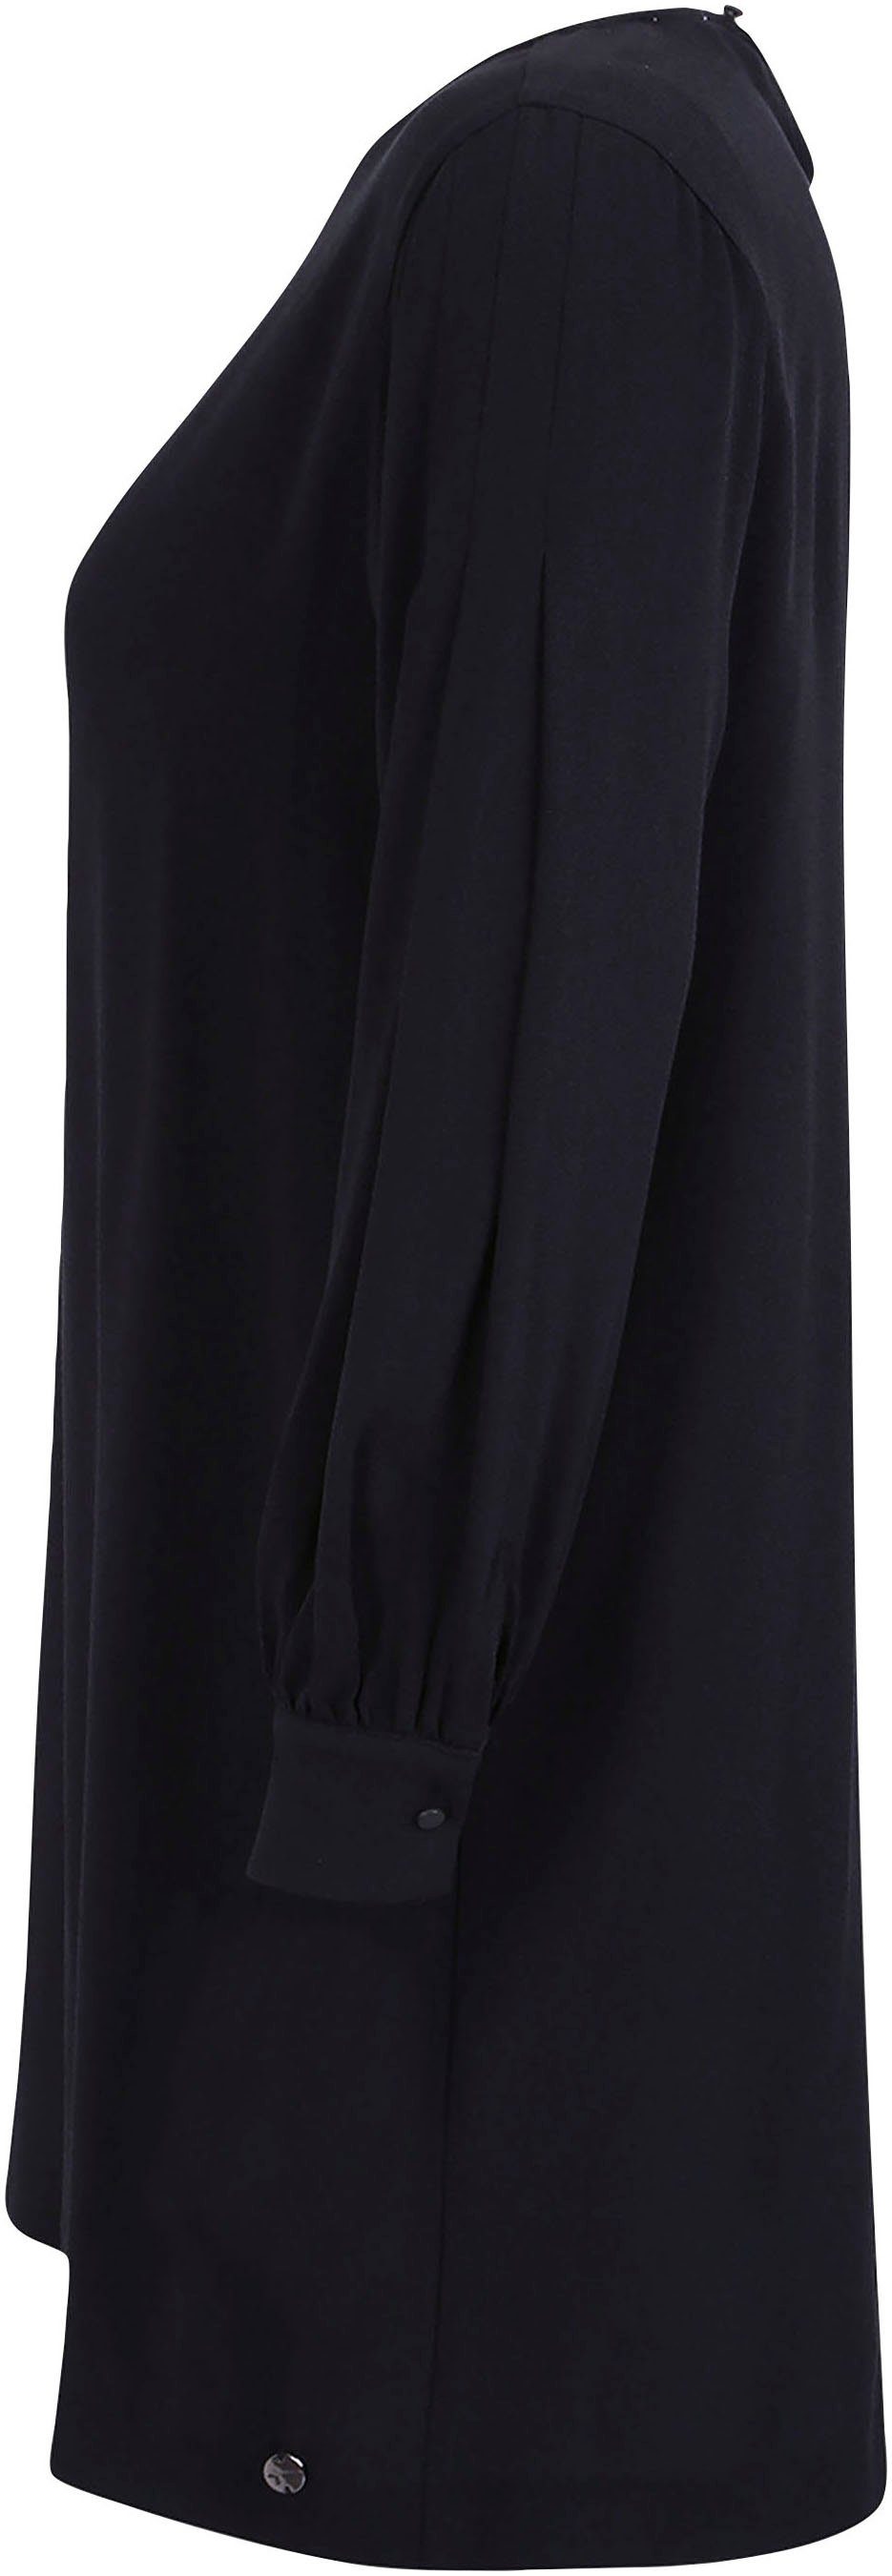 NEUE beauty A-Linien-Kleid Rundhalsausschnitt- mit KOLLEKTION Tamaris black